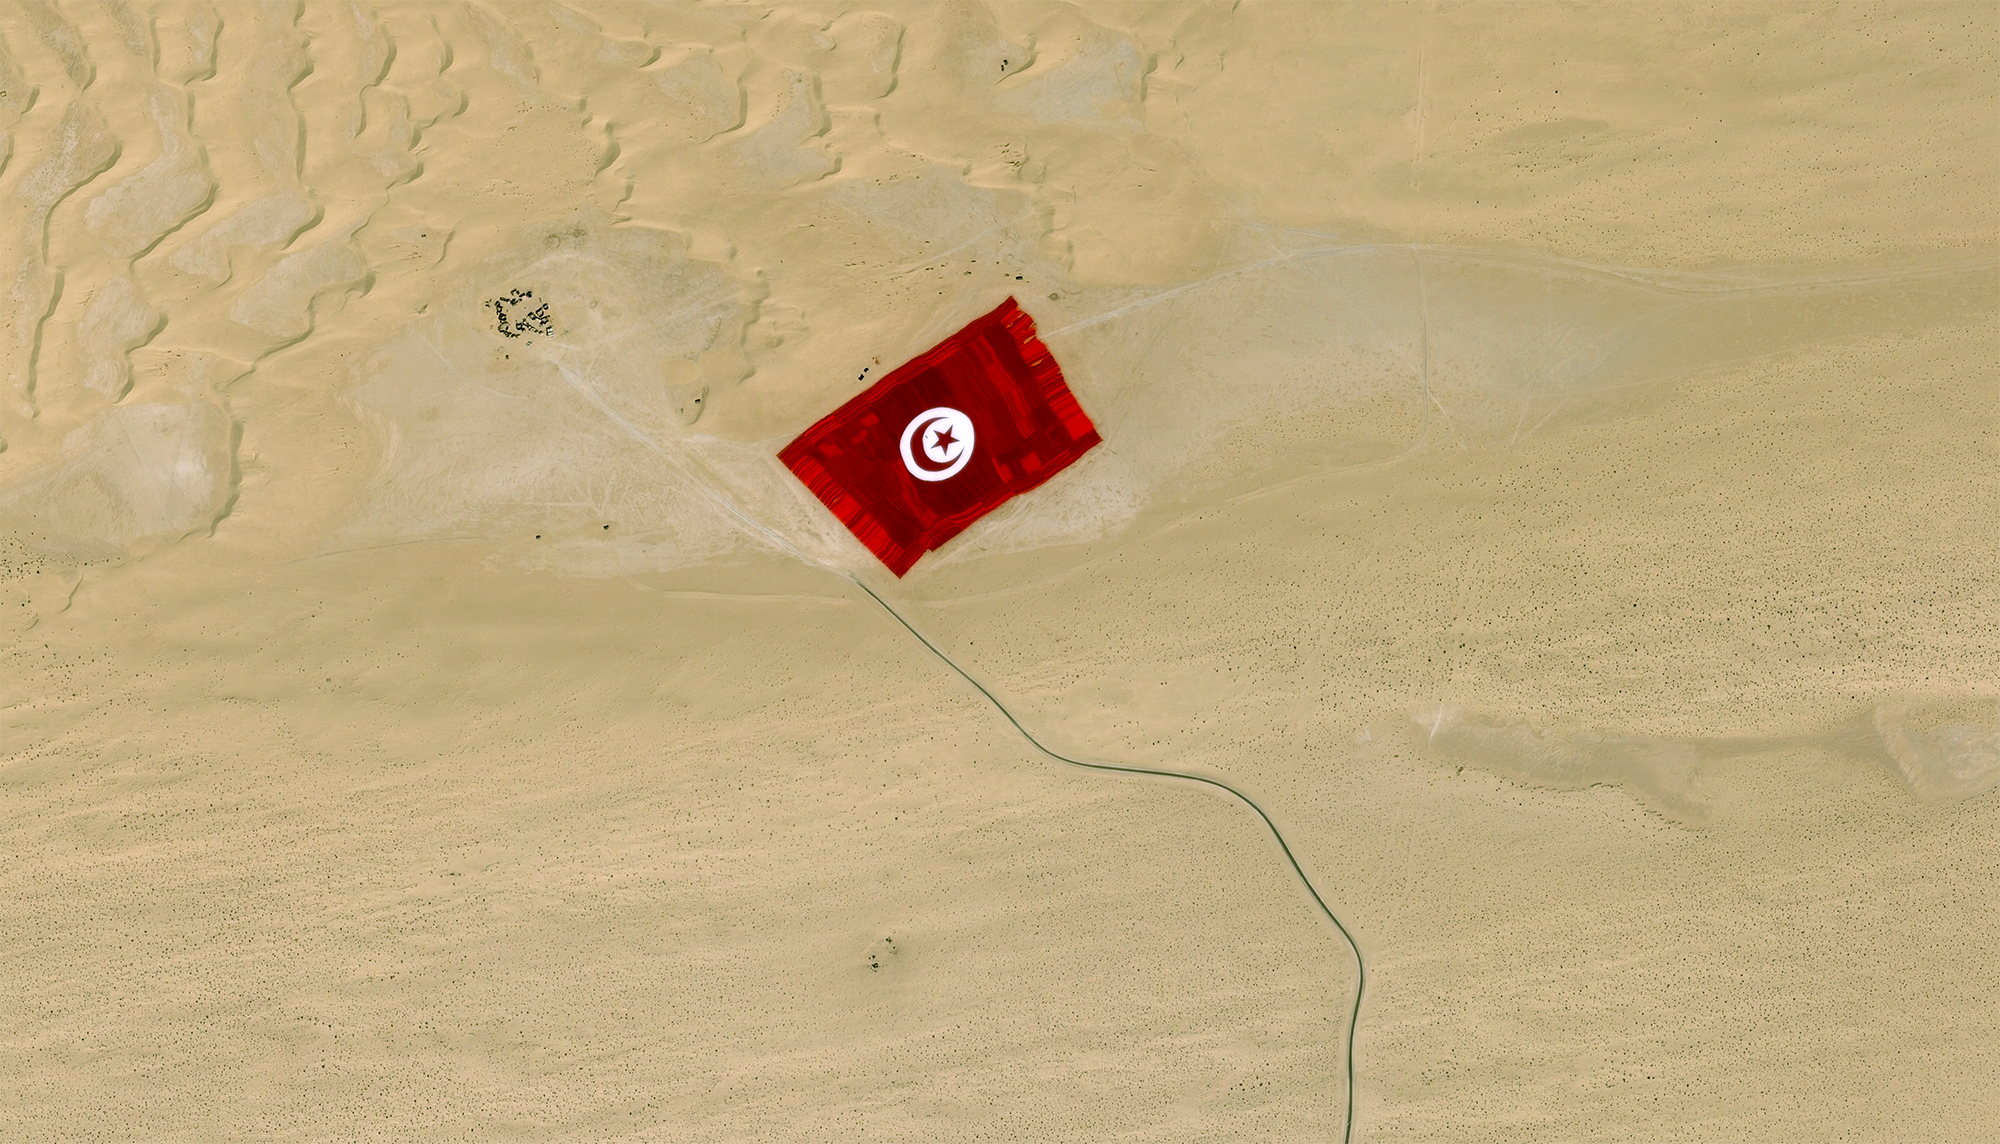 La Tunisie enregistre le record du monde avec le plus grand drapeau